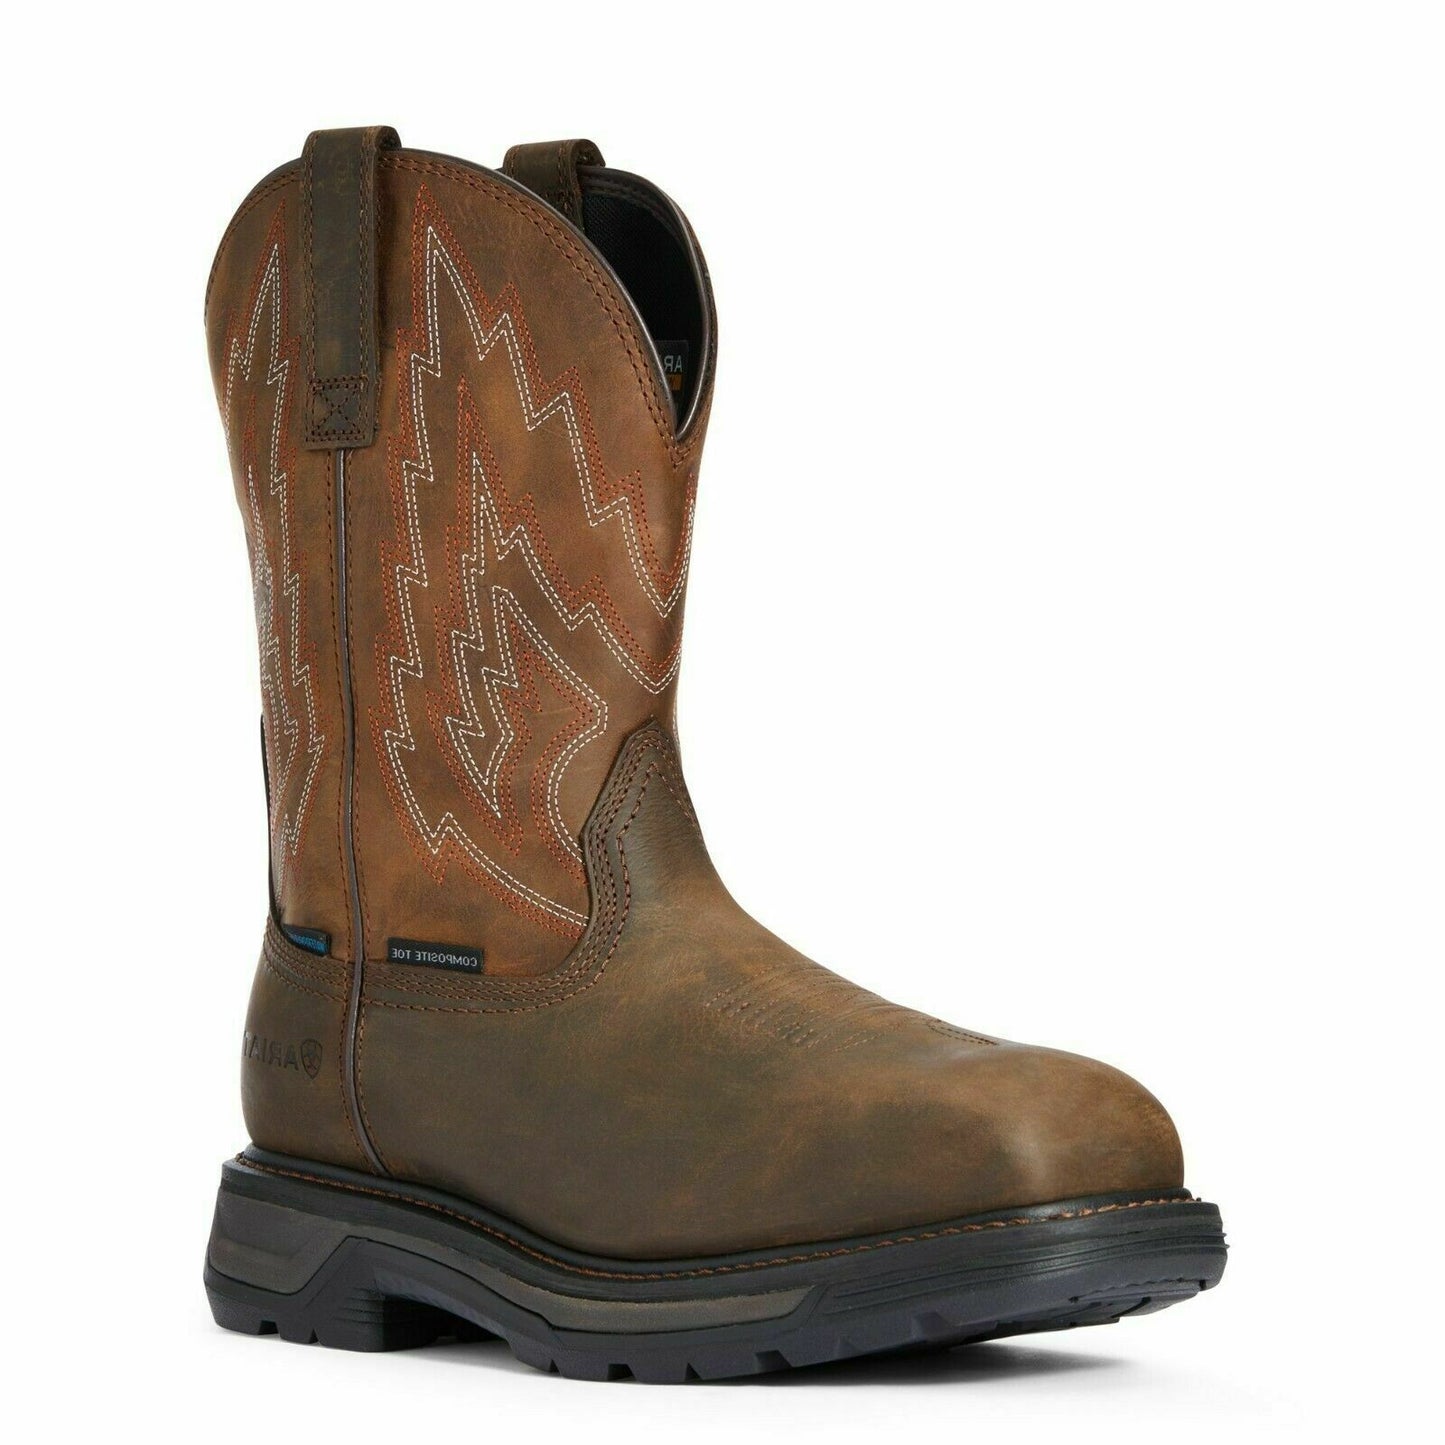 ARIAT MEN'S Style No. 10033993 Big Rig Waterproof Composite Toe Work Boot